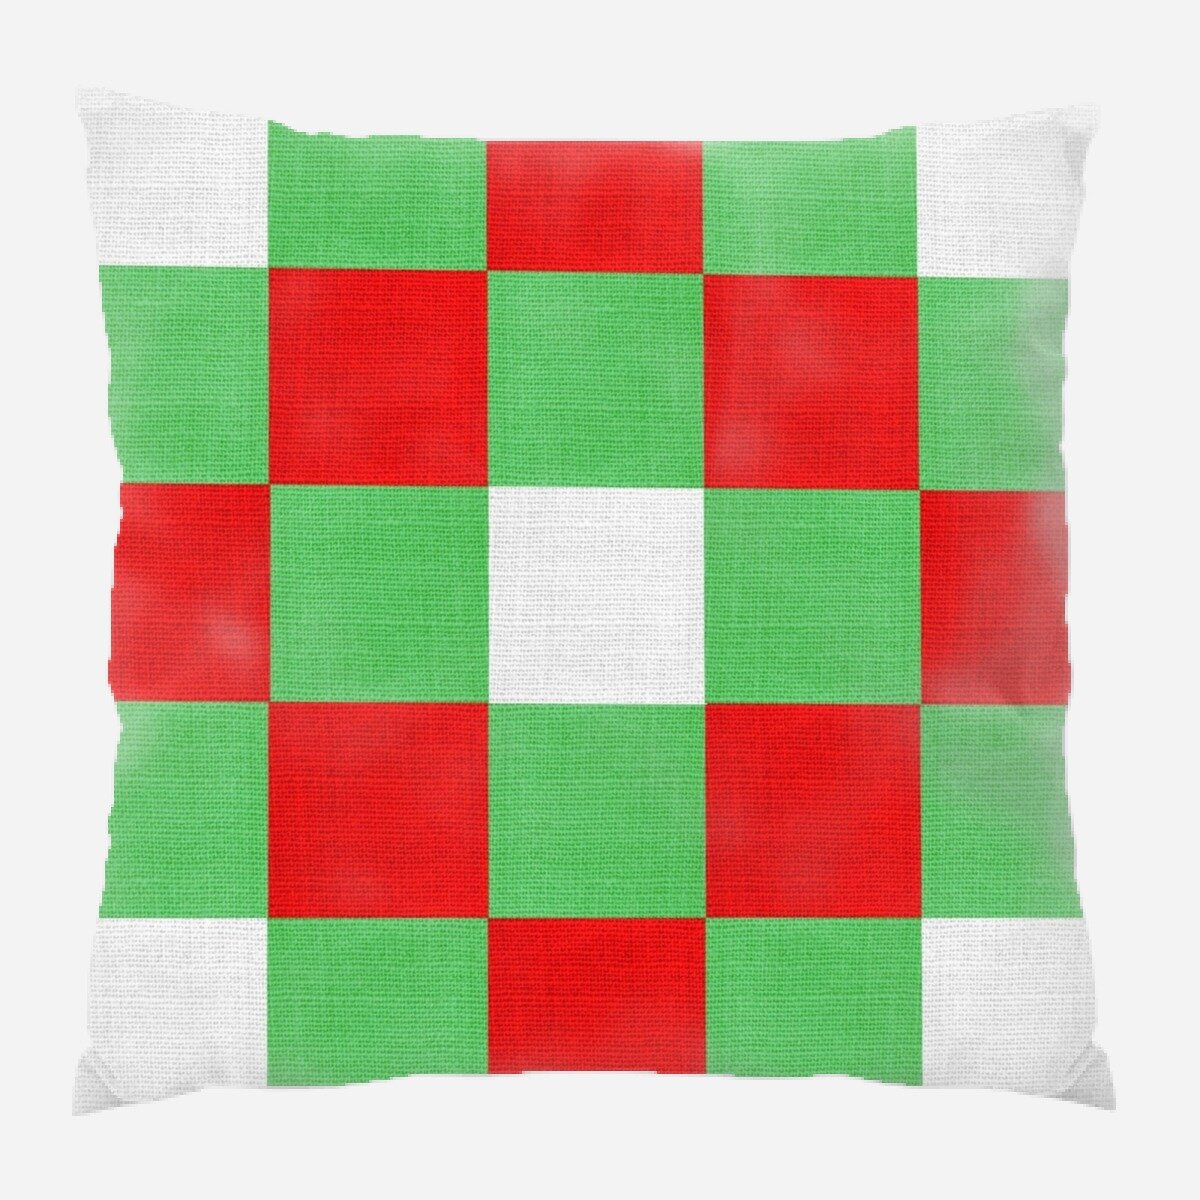 wayfair pillows christmas